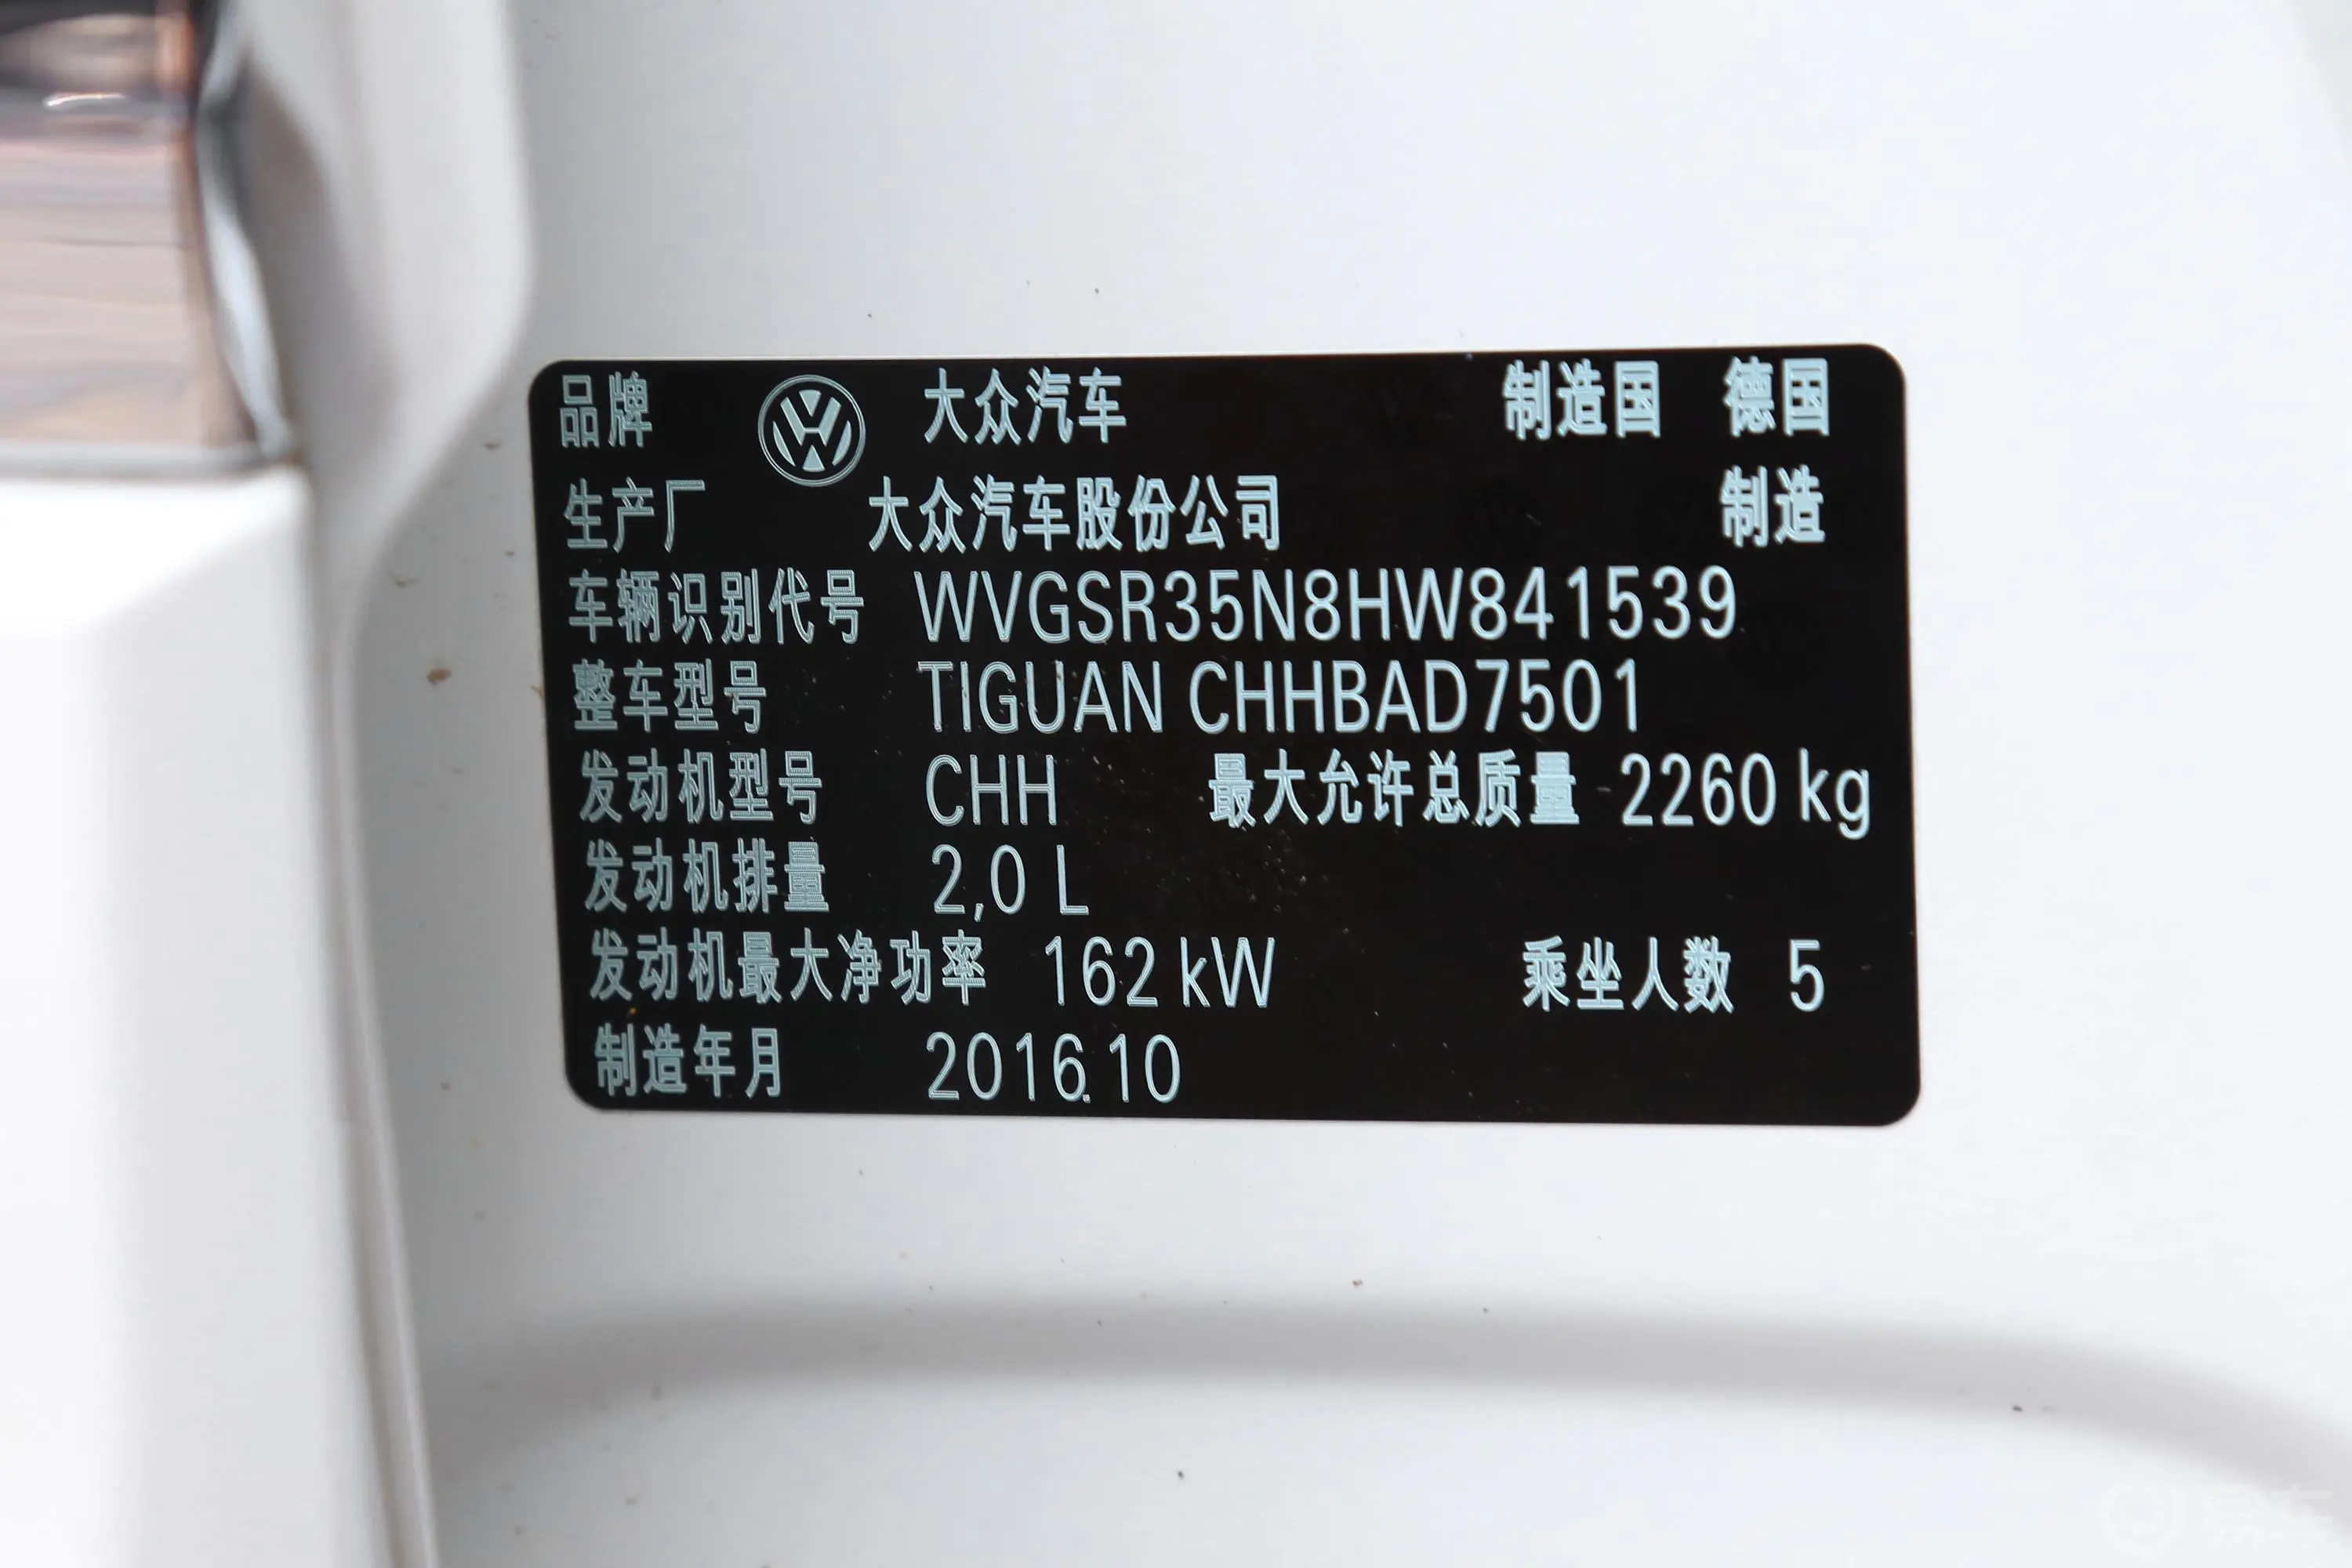 Tiguan380TSI 四驱 R-line车辆信息铭牌